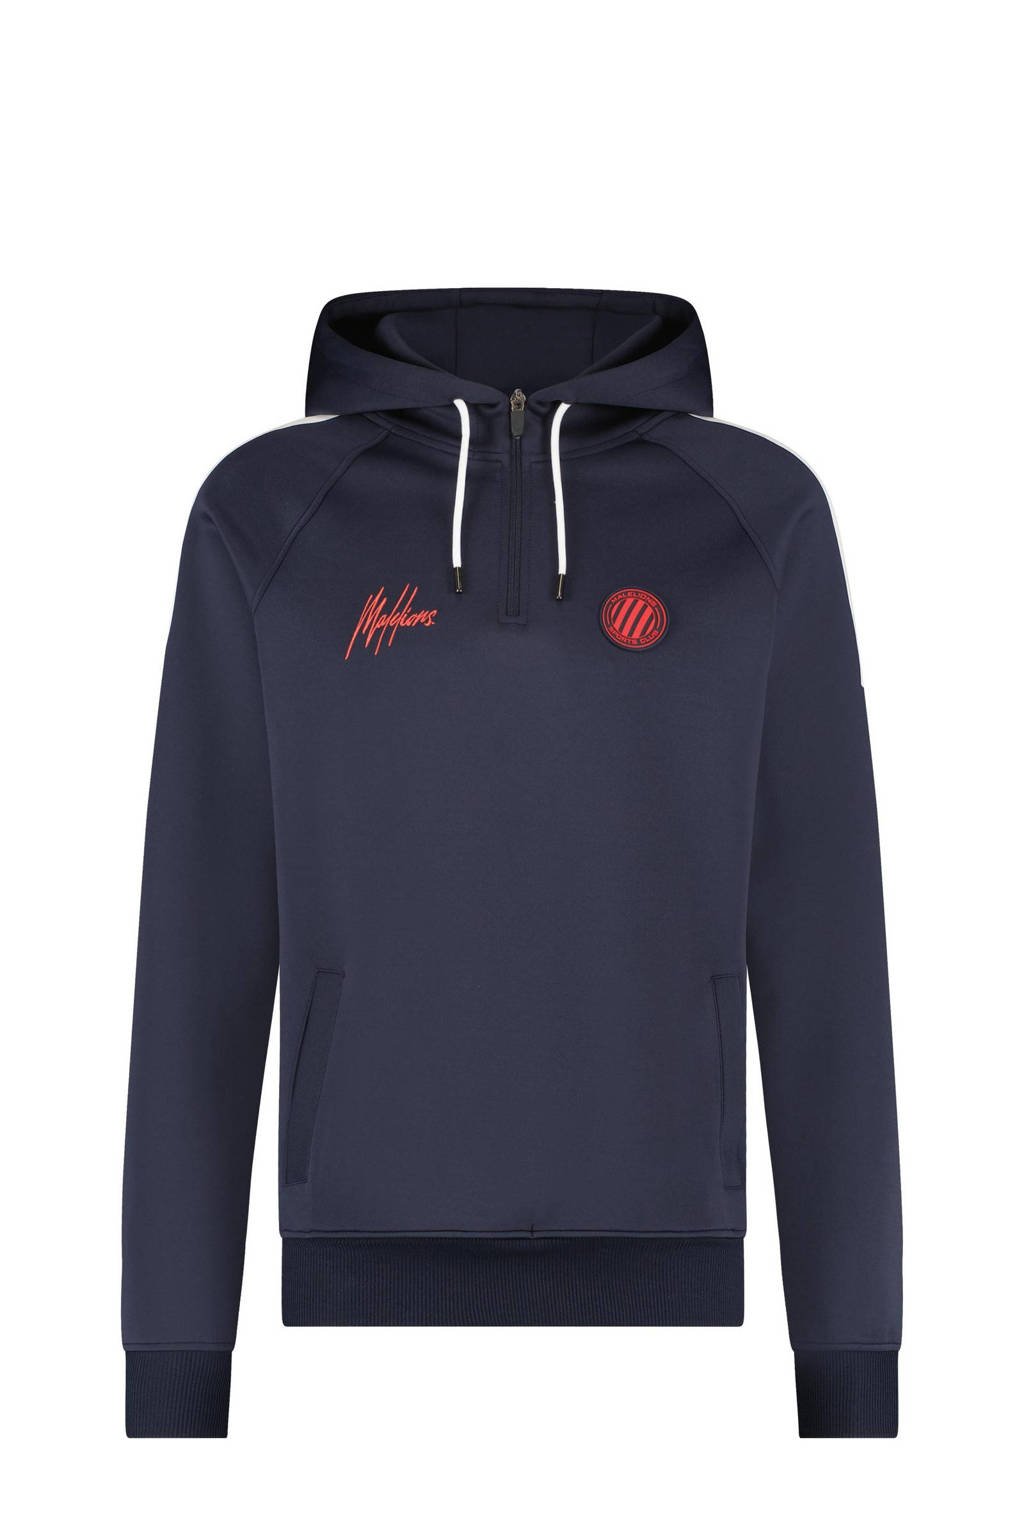 Malelions hoodie Hoodie Striker met logo blauw/wit/rood, Blauw/wit/rood